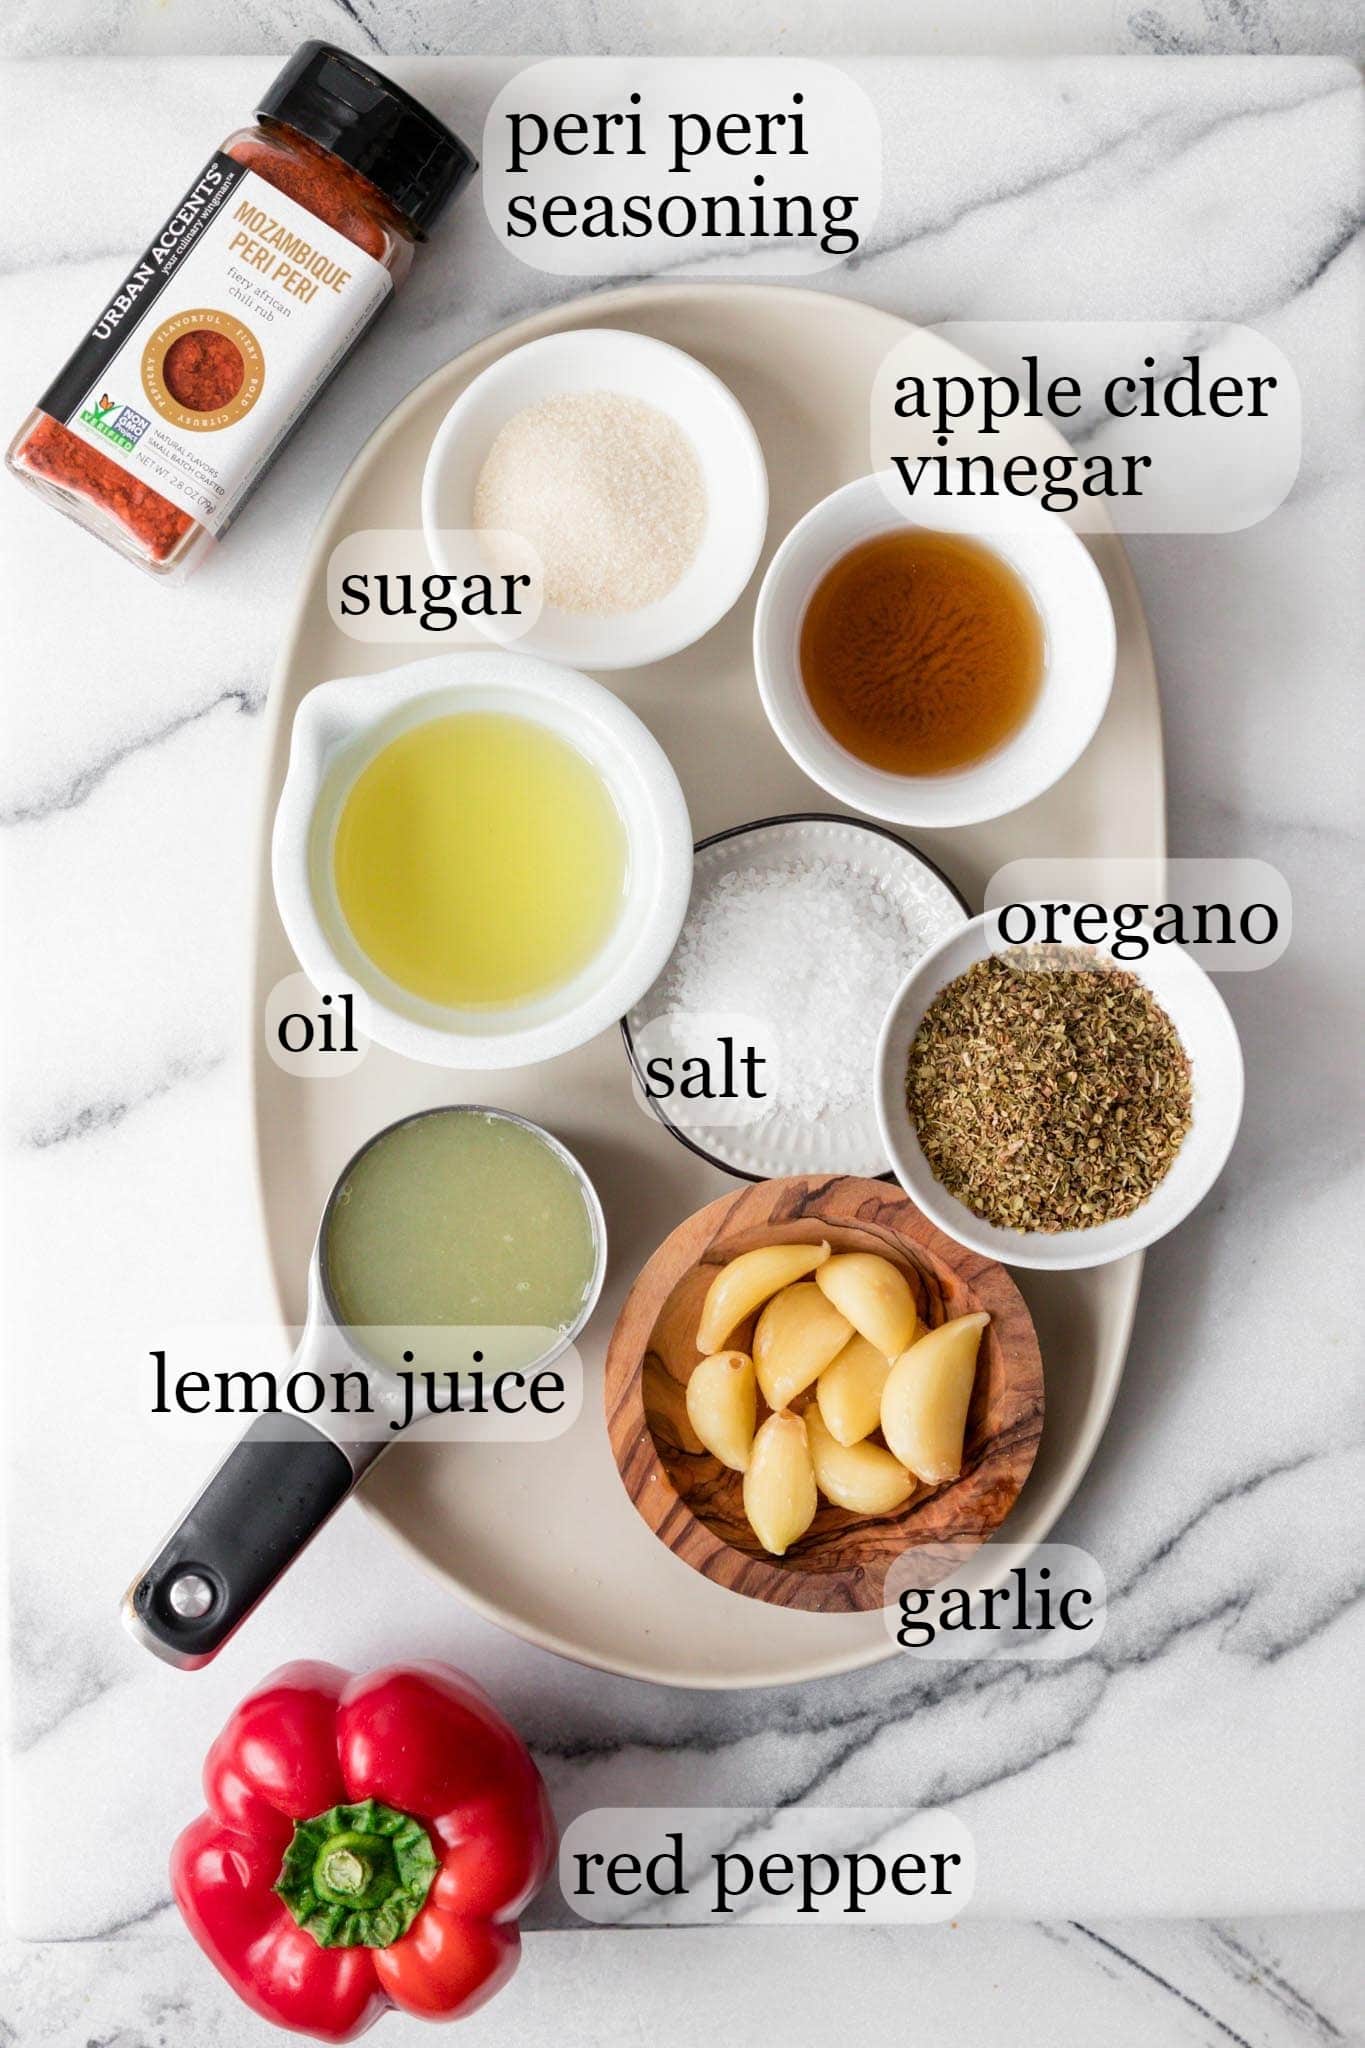 Ingredients for Peri Peri Sauce including peri peri seasoning, sugar, apple cider vinegar, oil, salt, oregano, lemon juice, garlic and red pepper.